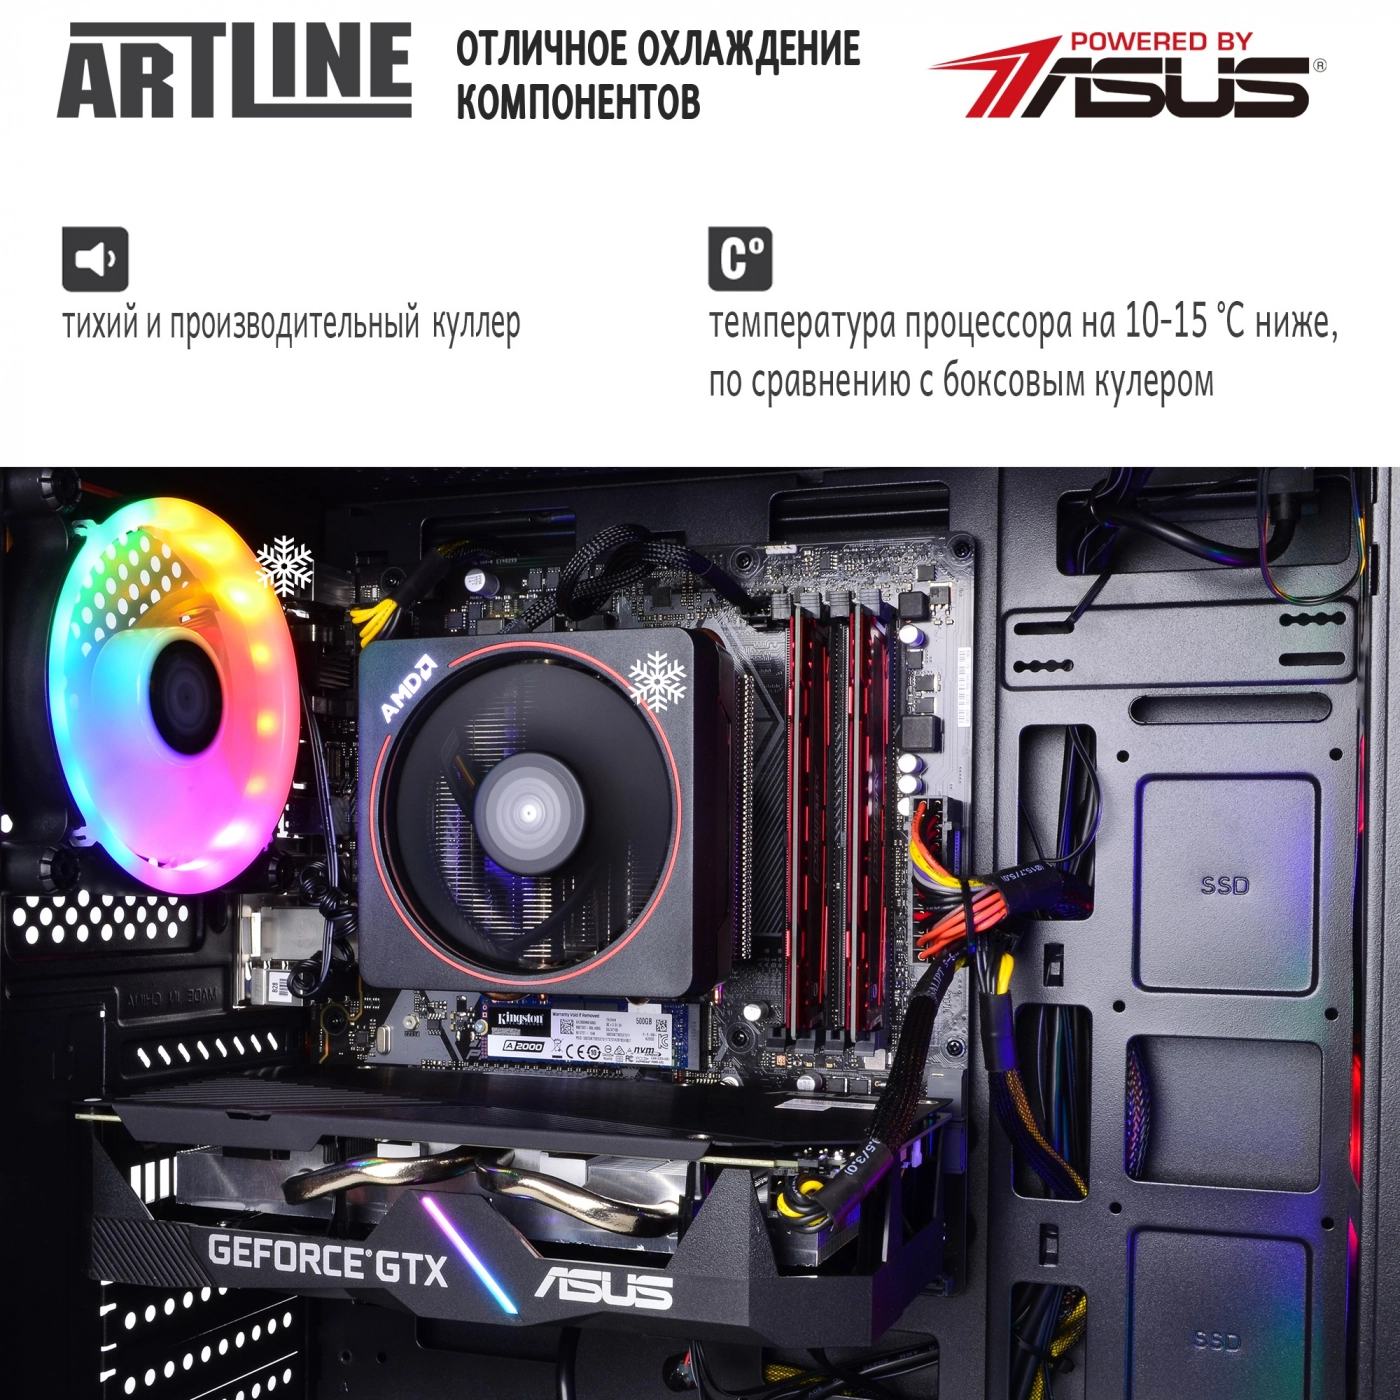 Купить Компьютер ARTLINE Gaming X64v07 - фото 7